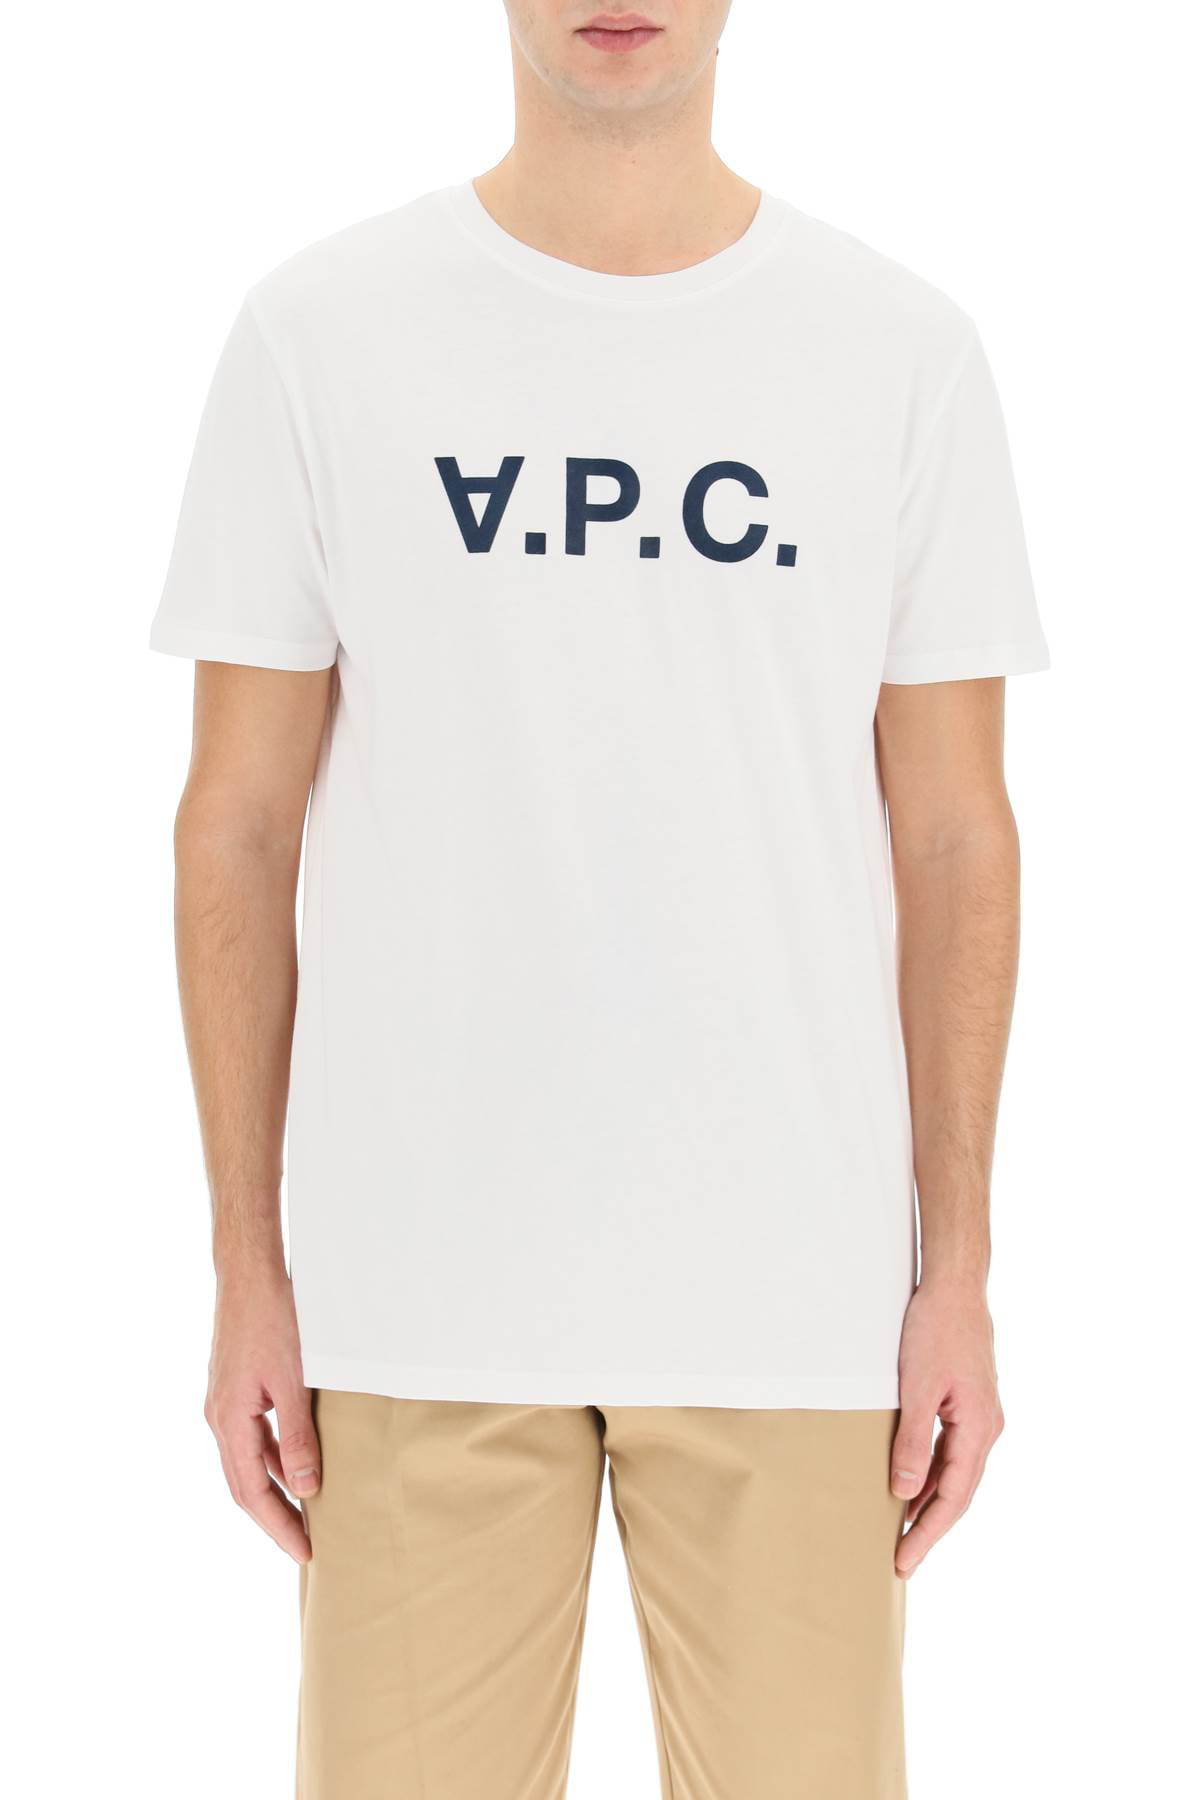 Nonsens Verdensrekord Guinness Book Børnepalads A.p.c. flocked vpc logo t-shirt - Walmart.com